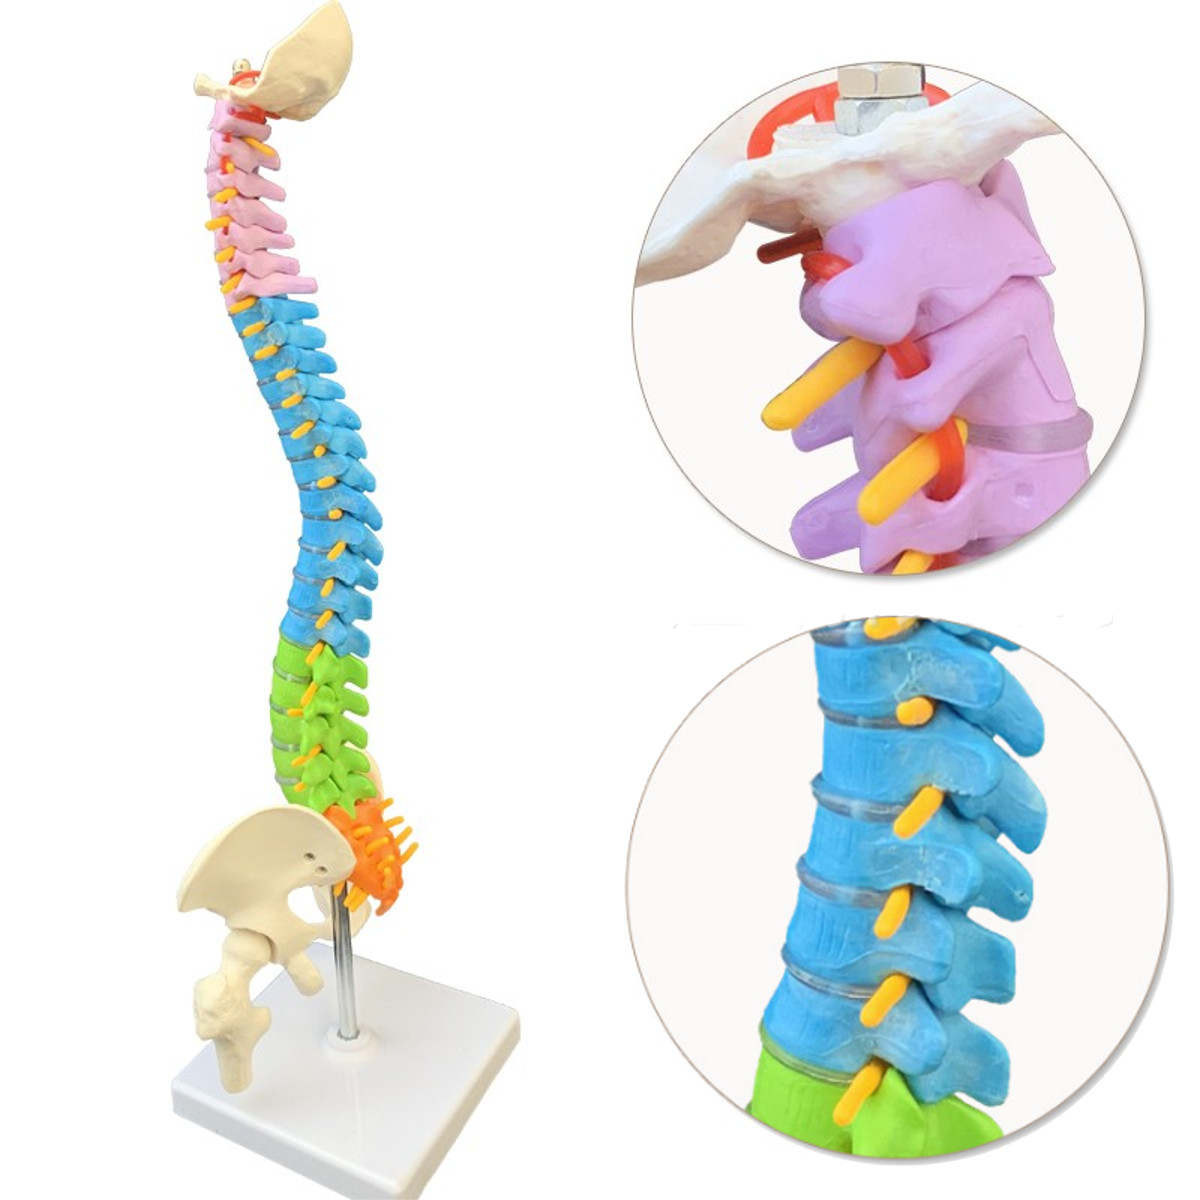 

45см Colorful Позвоночник Колонка позвоночника человека Анатомическая модель Скелет Медицинская Наука Образование